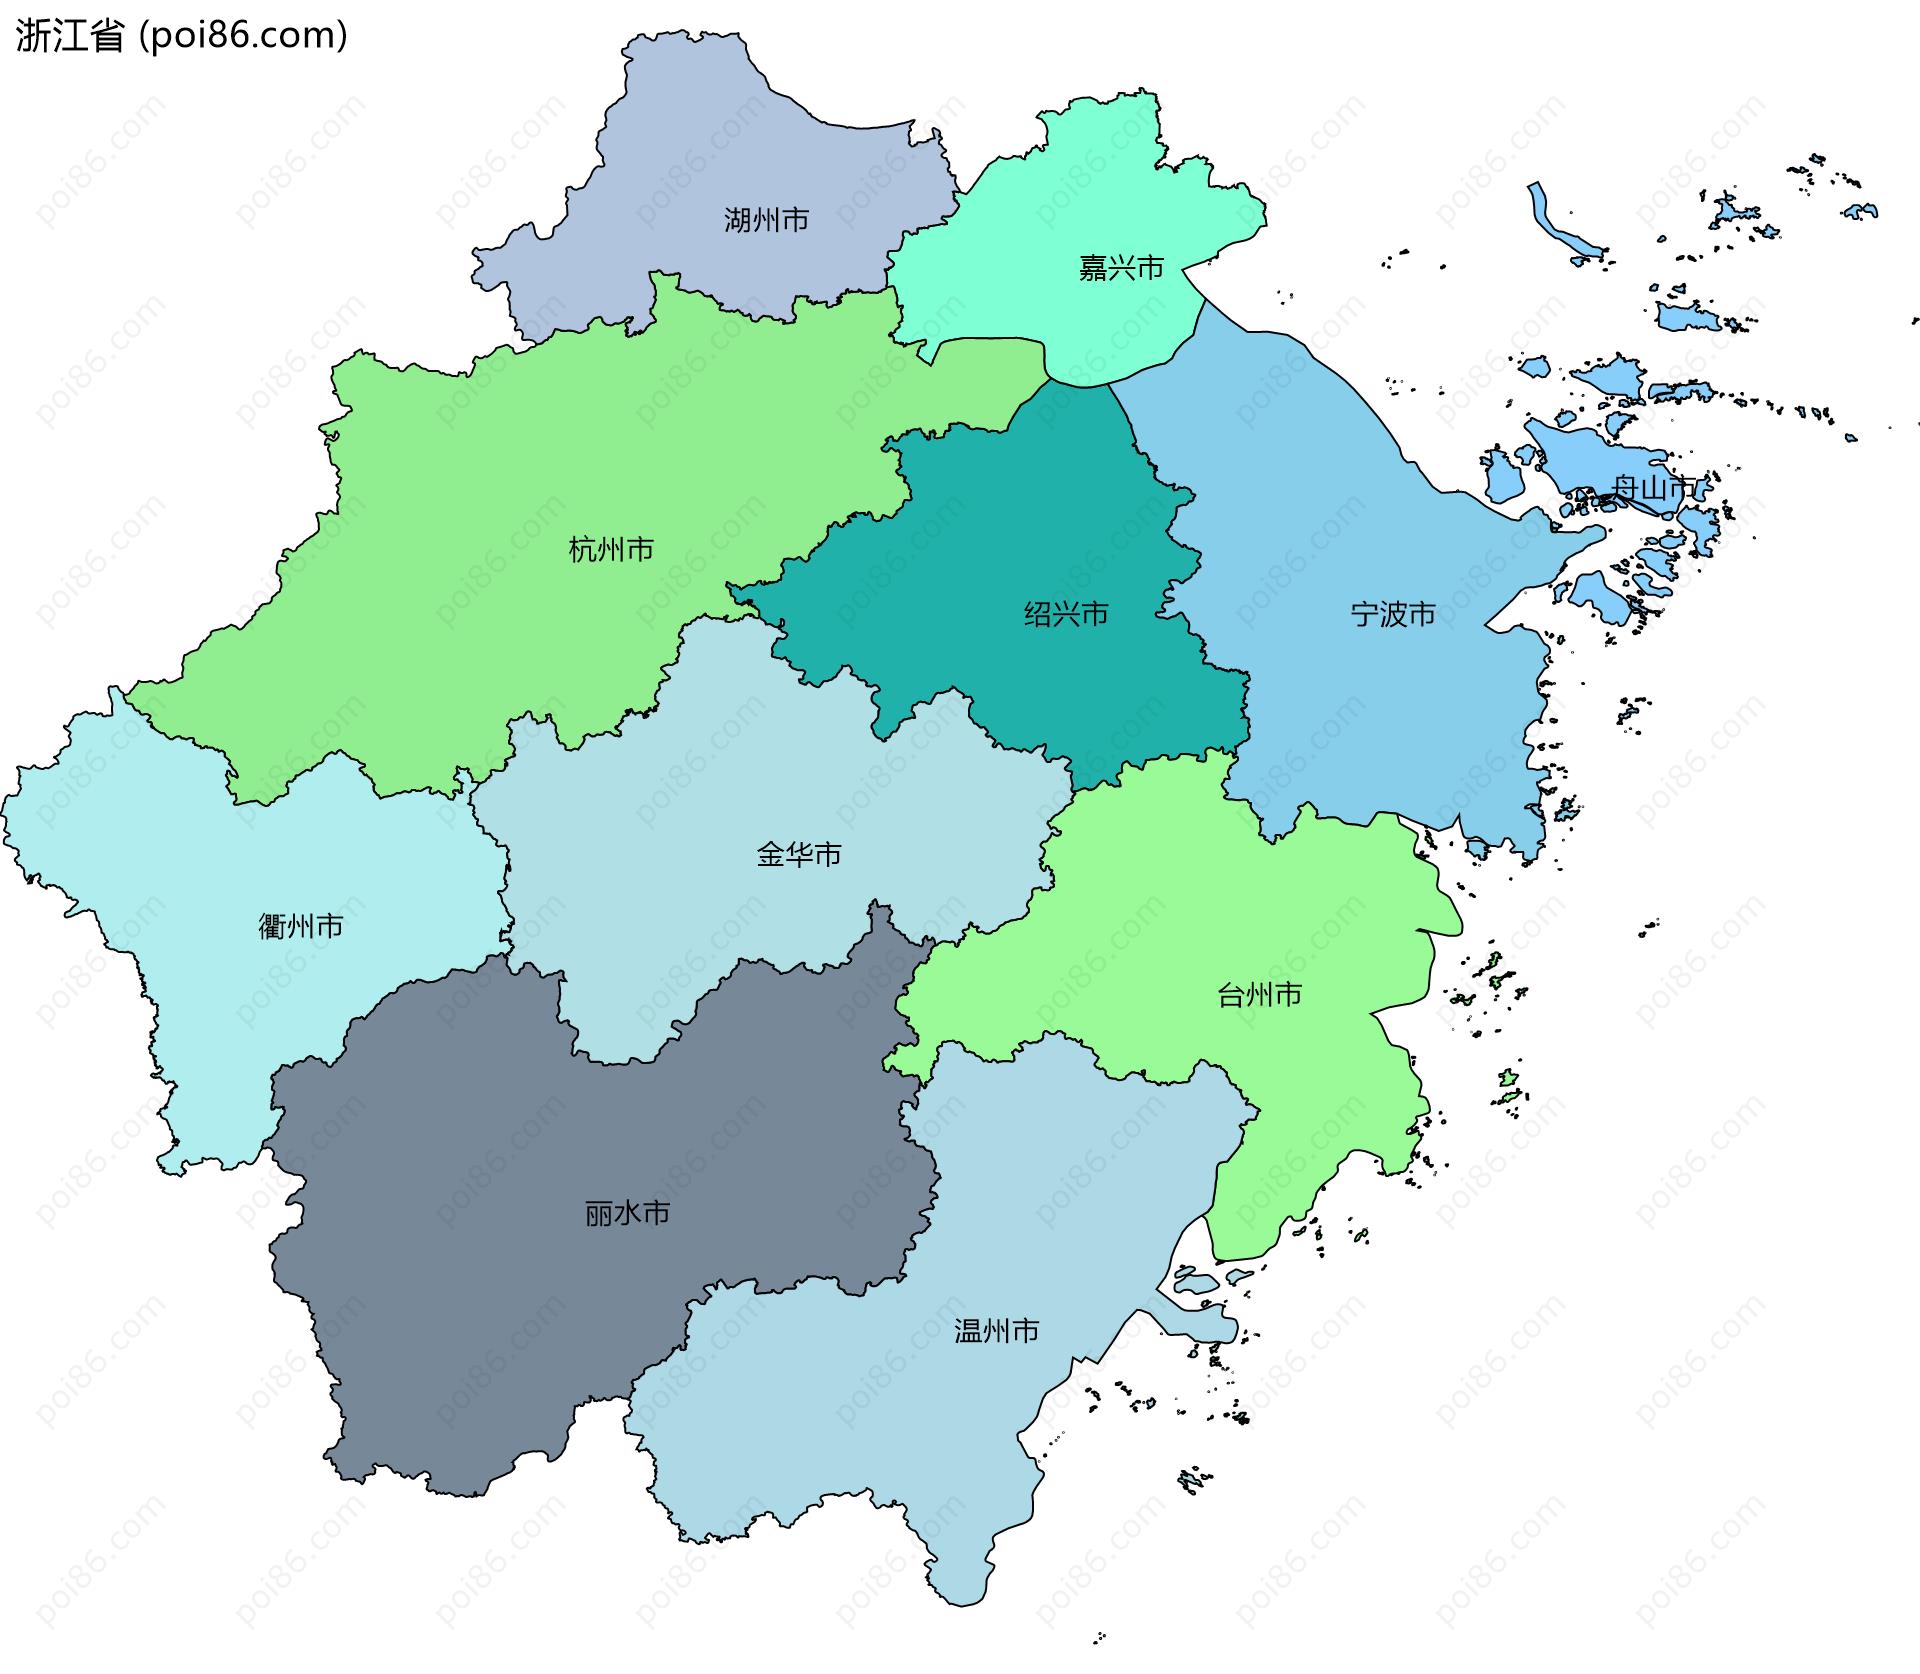 浙江省边界地图